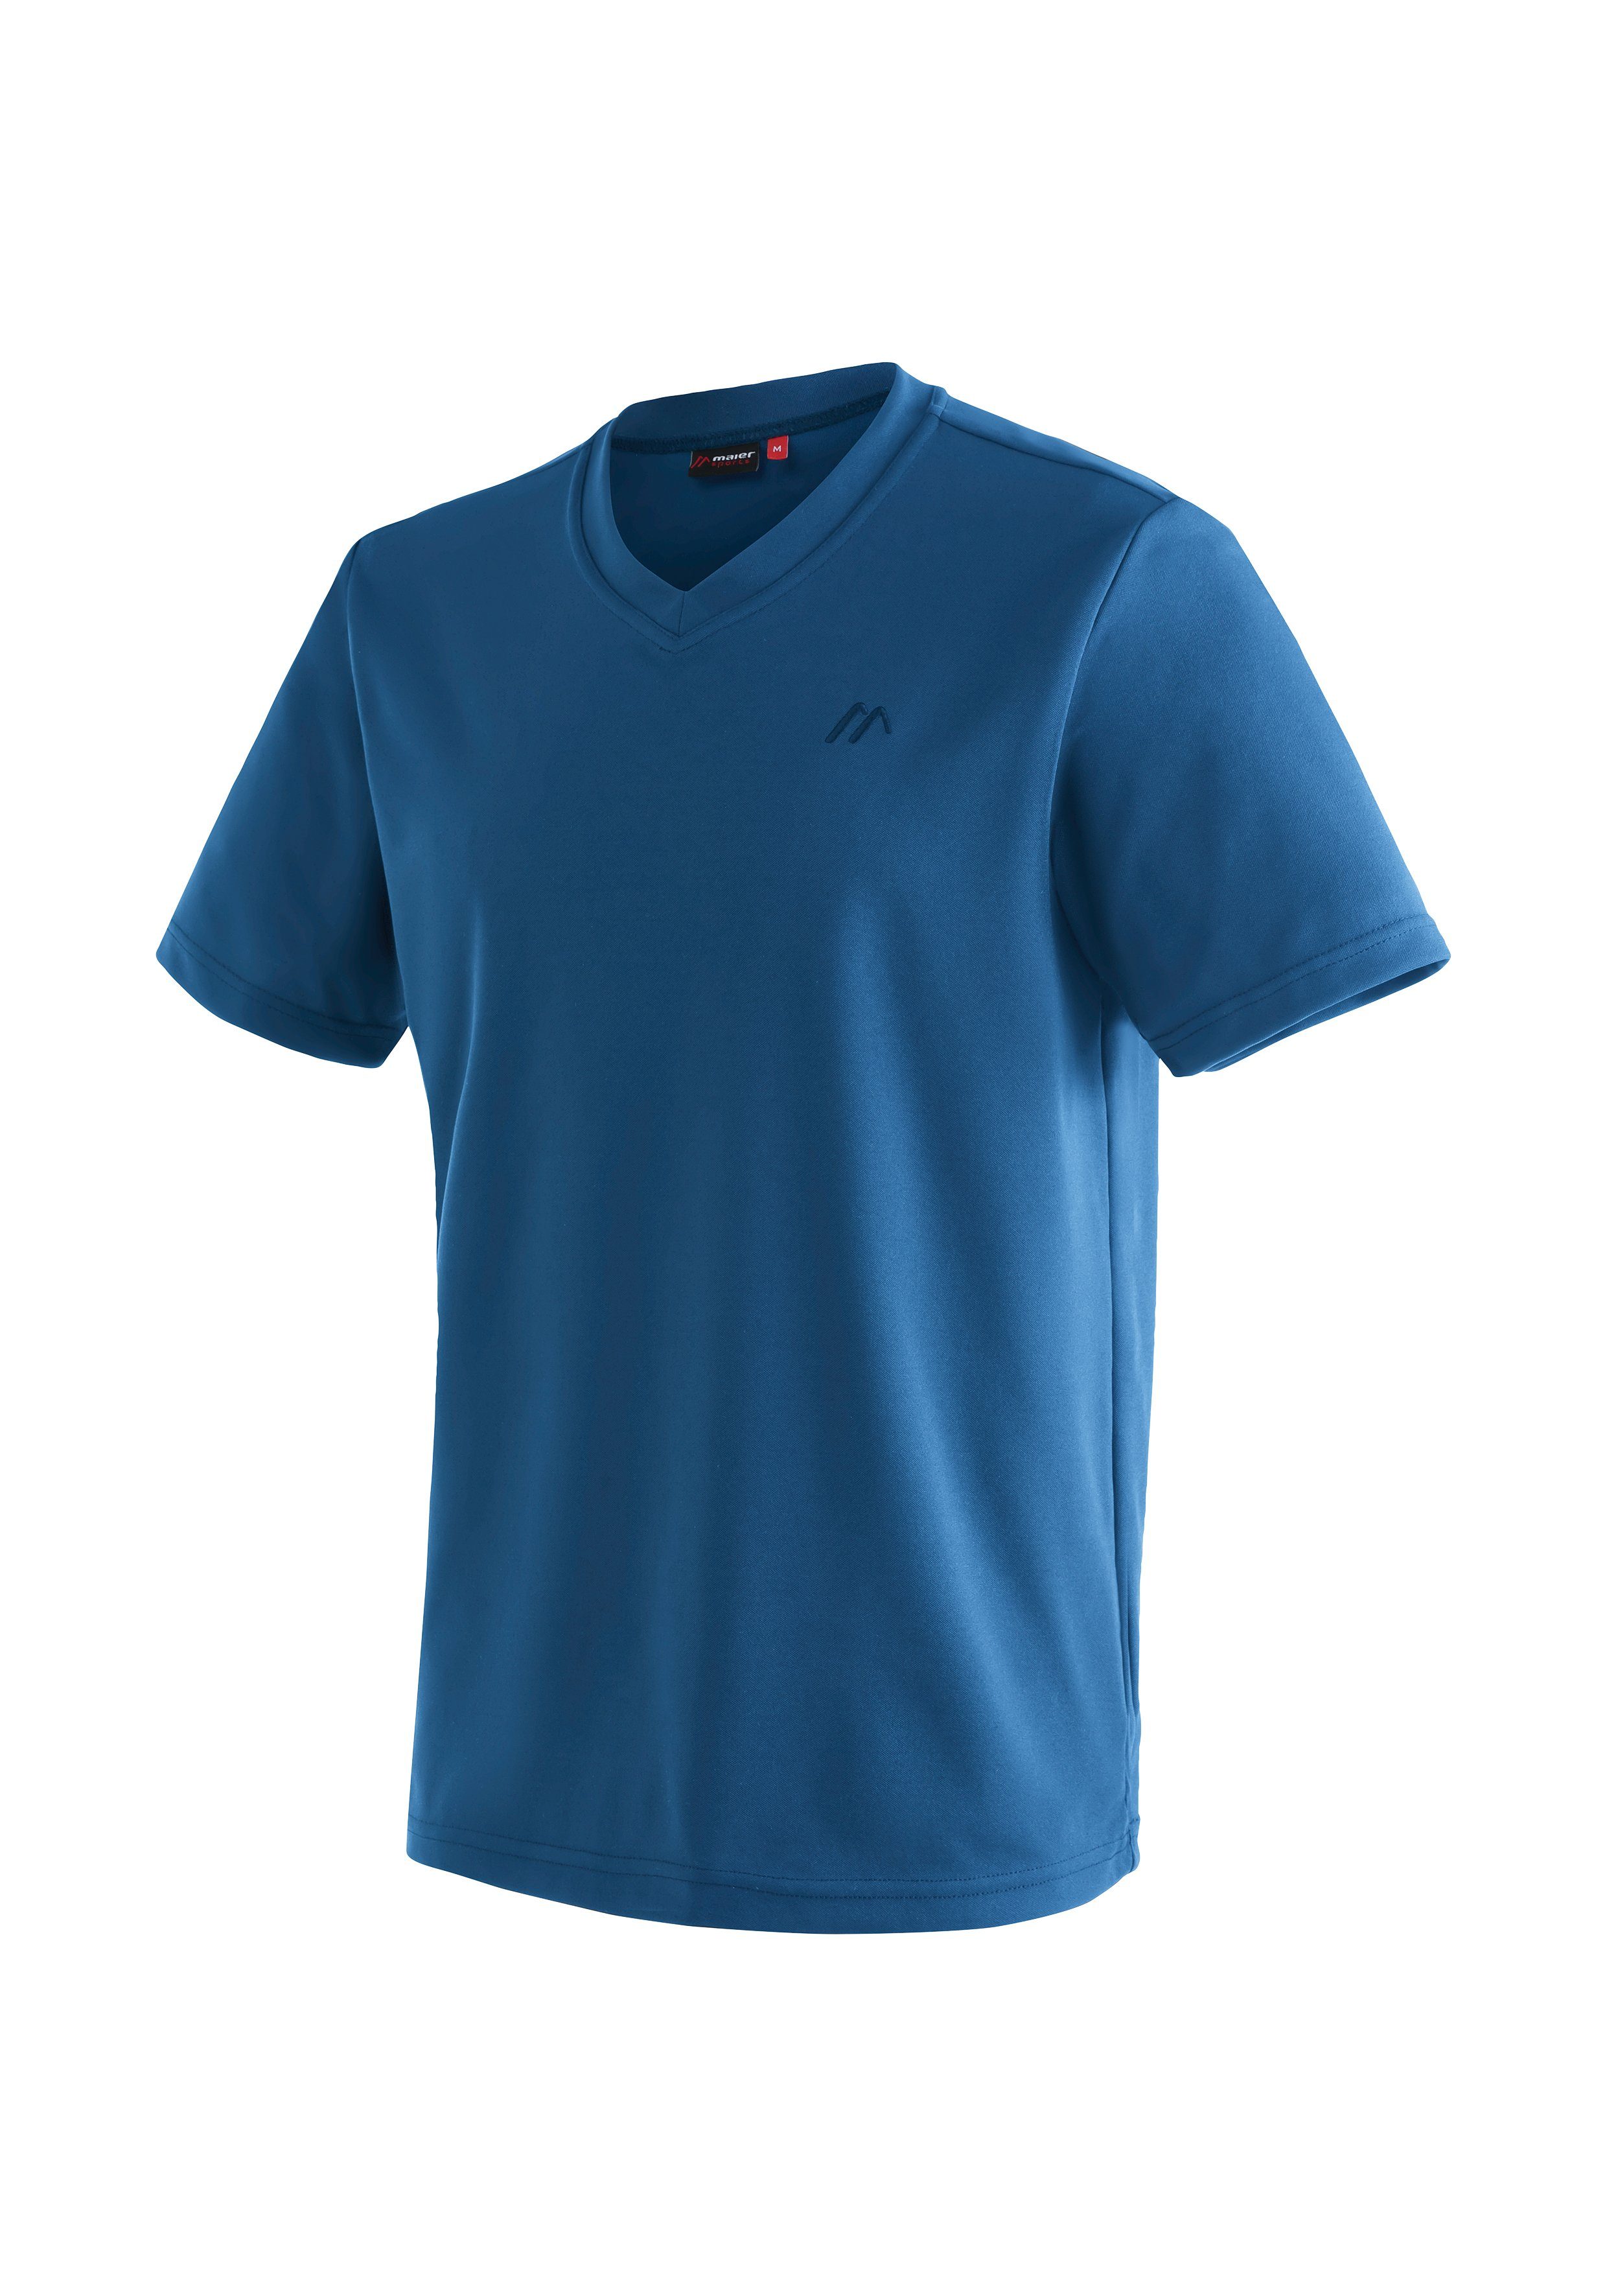 Maier Sports Wali Funktionsshirt und nachtblau Kurzarmshirt Herren Freizeit T-Shirt, für Wandern